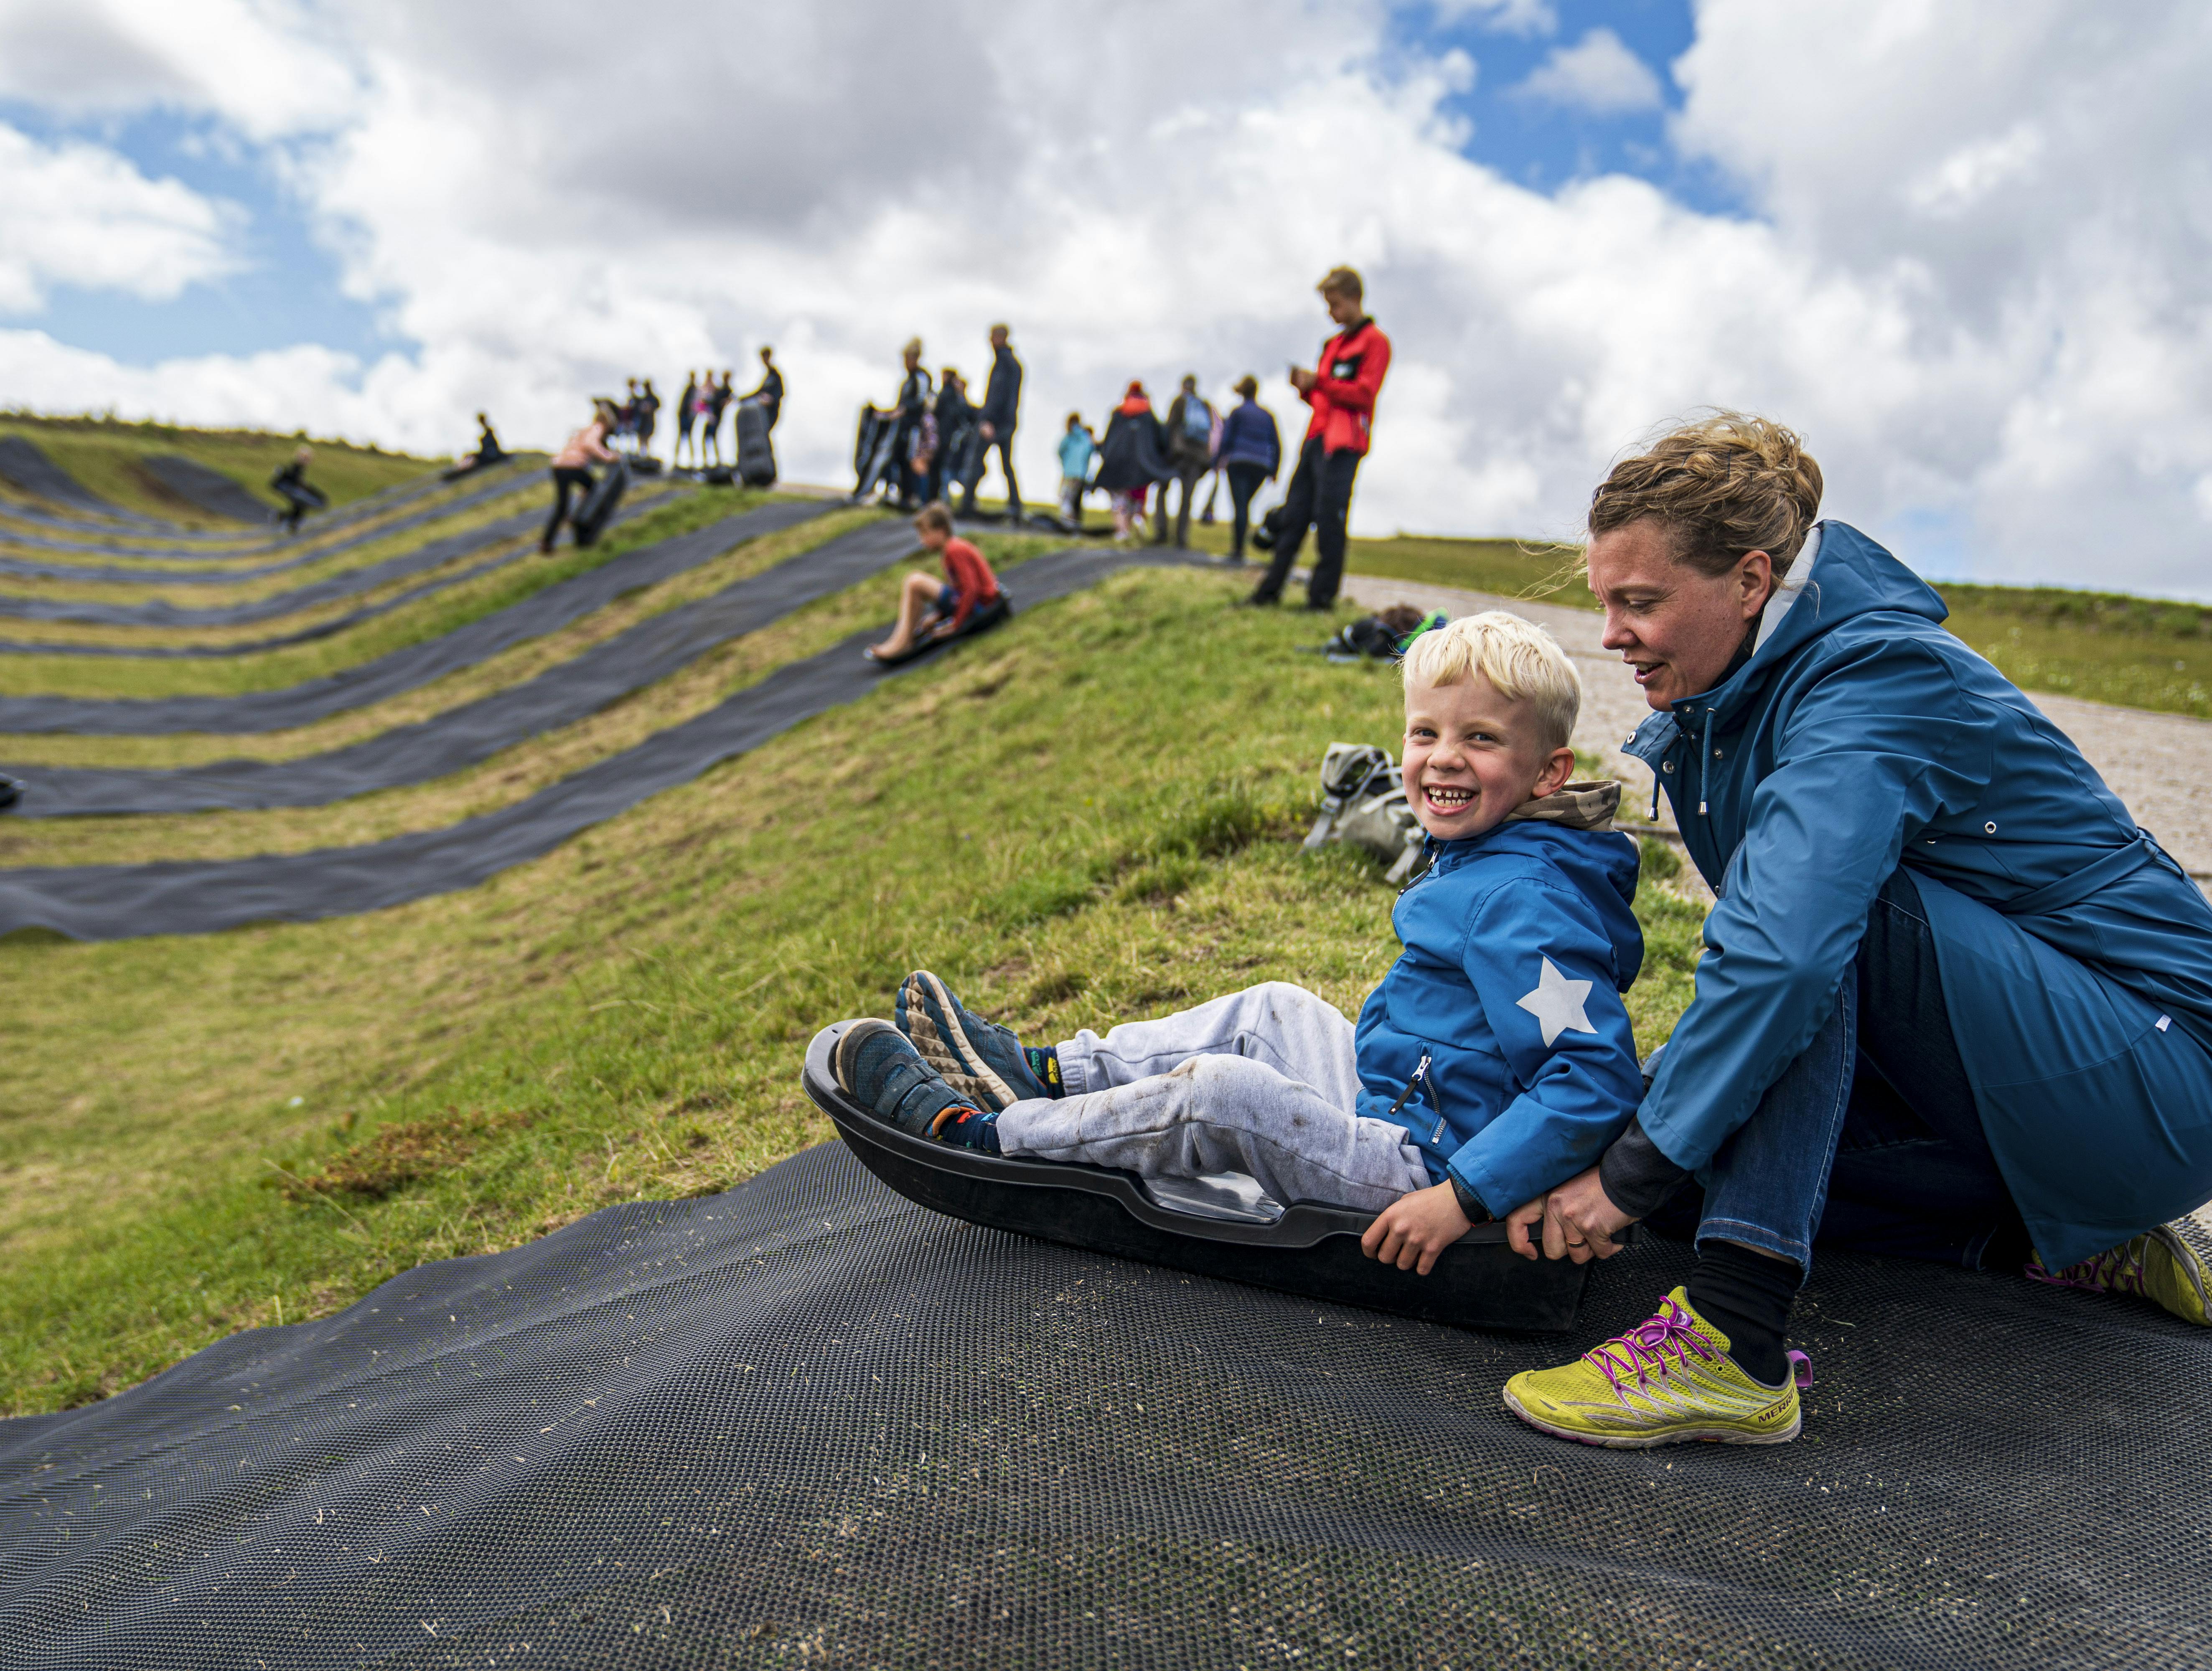 Familie Journal har besøgt Danmarks nye oplevelsescenter Naturkraft ved Ringkøbing, hvor alle aldersgrupper både kan lege og lære